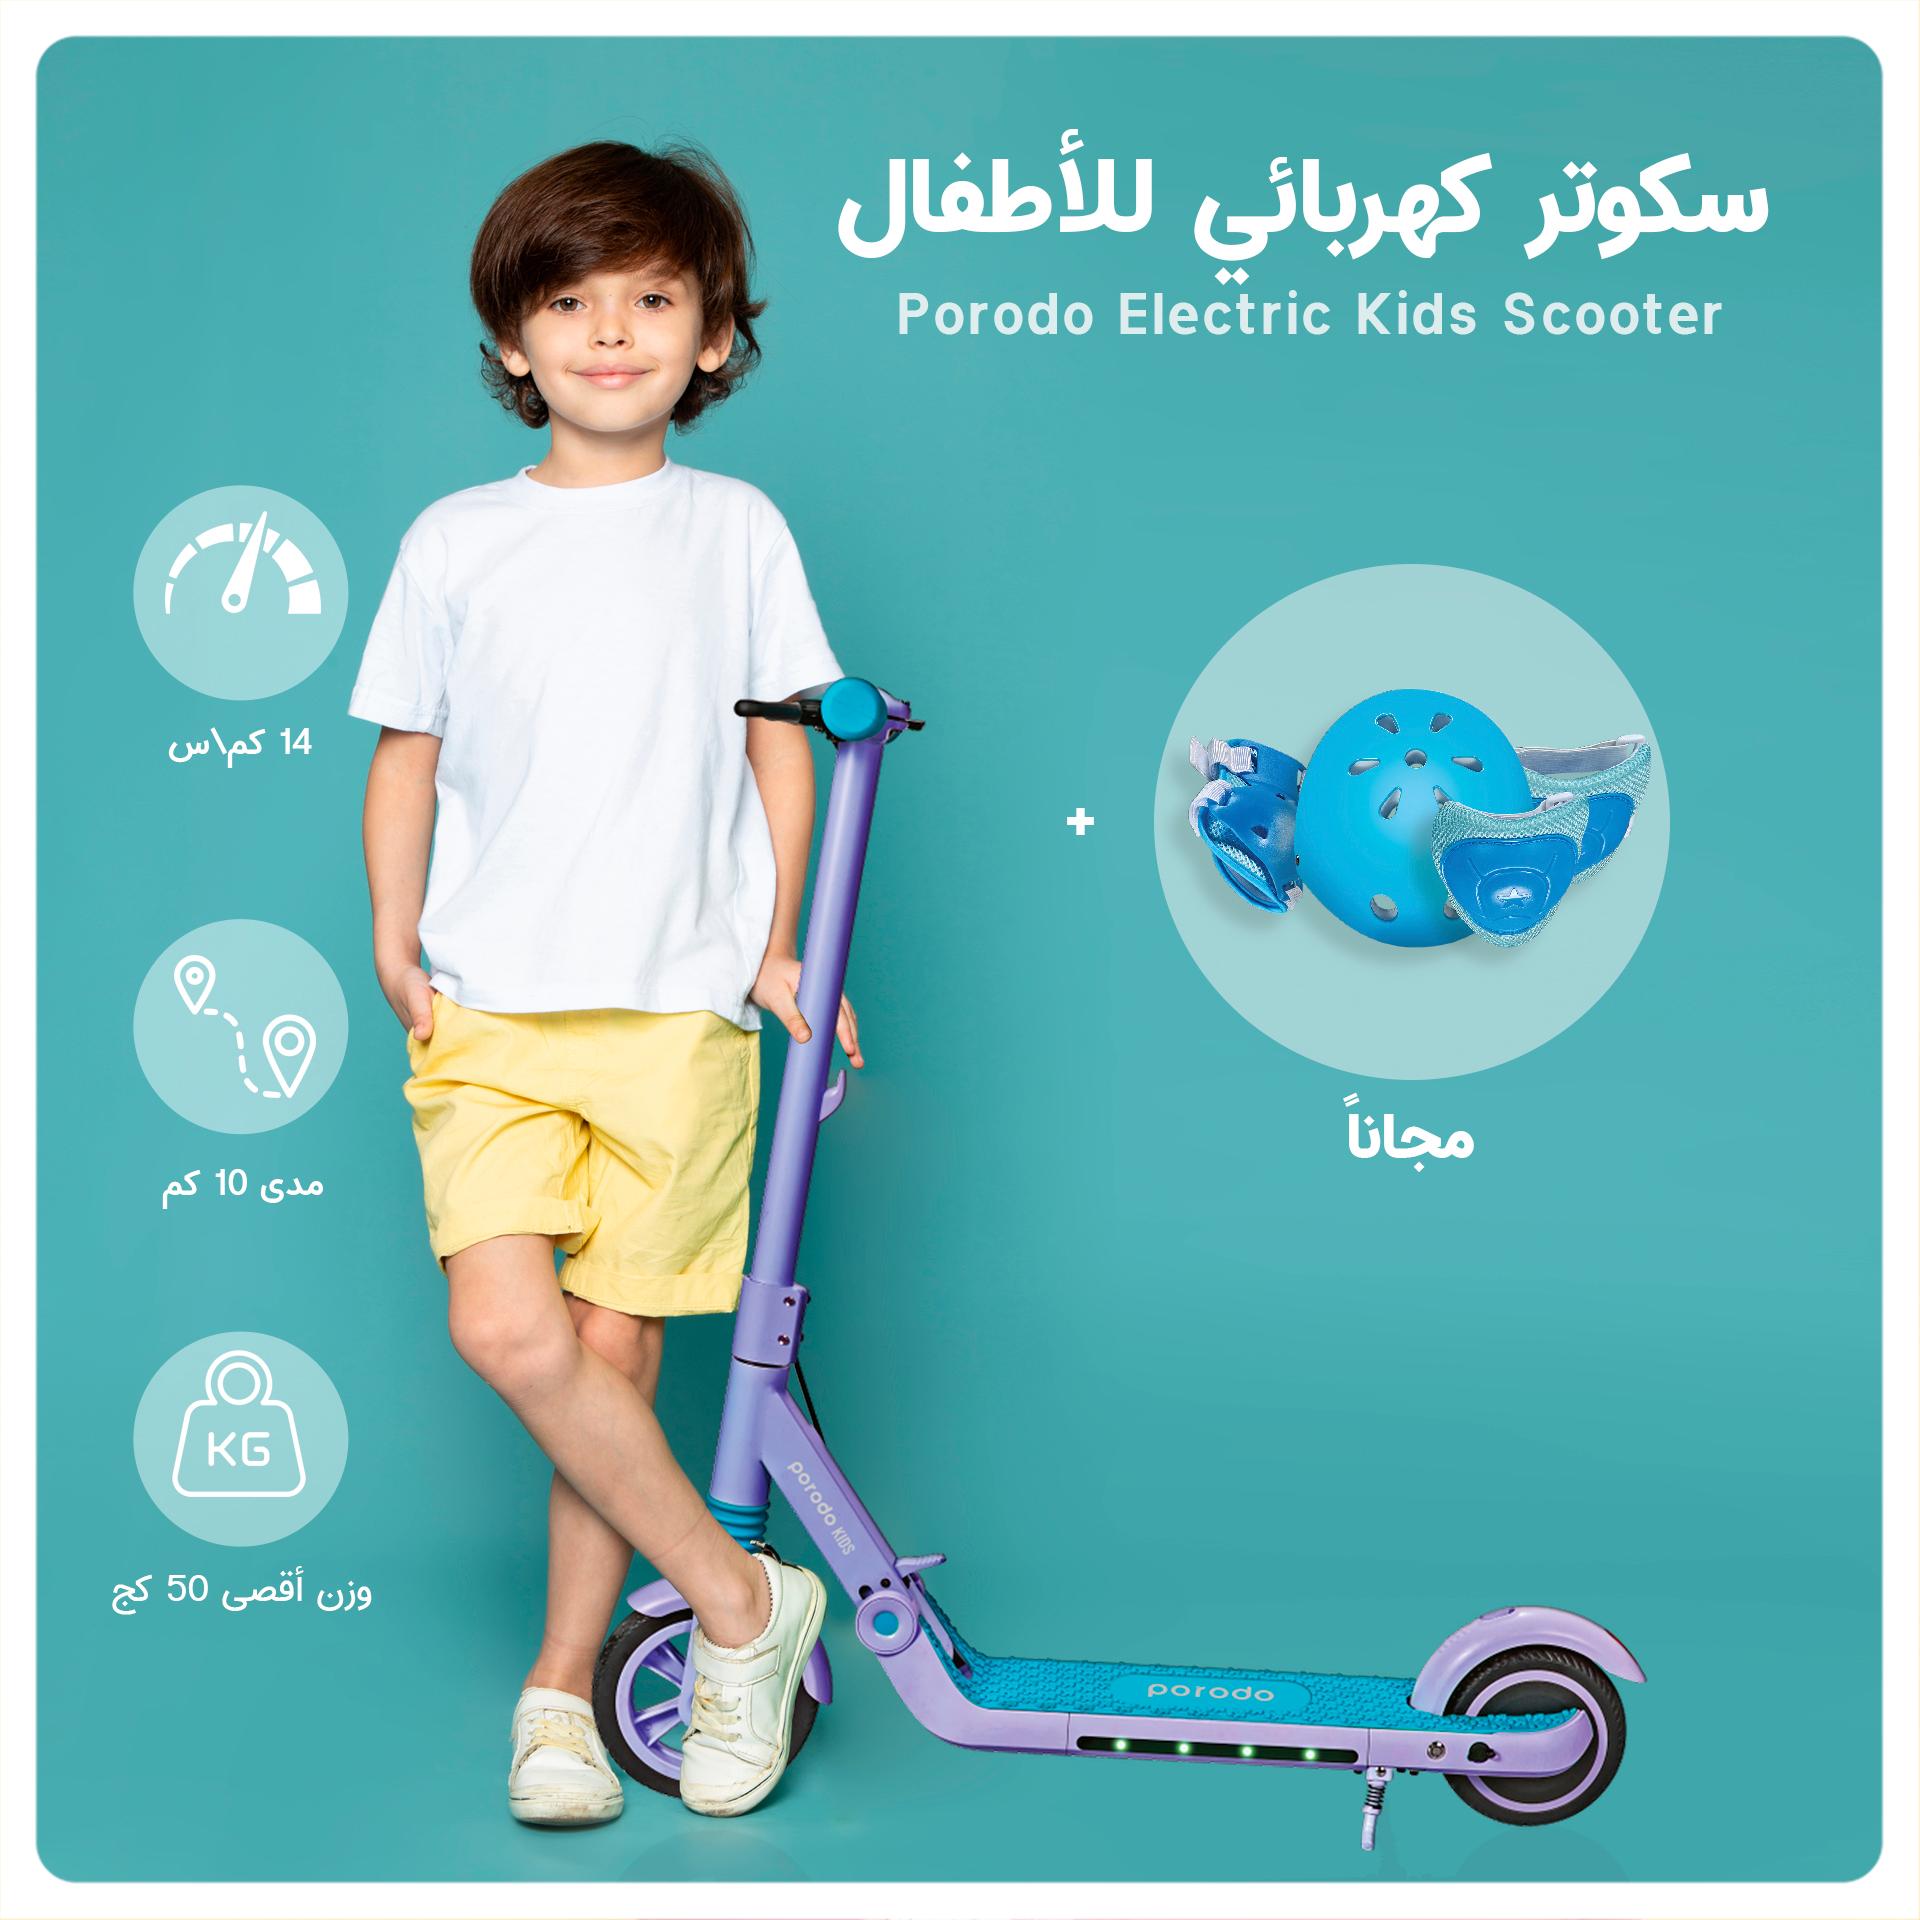 سكوتر كهربائي للأطفال 200 واط لون أزرق Porodo Electric Kids Scooter